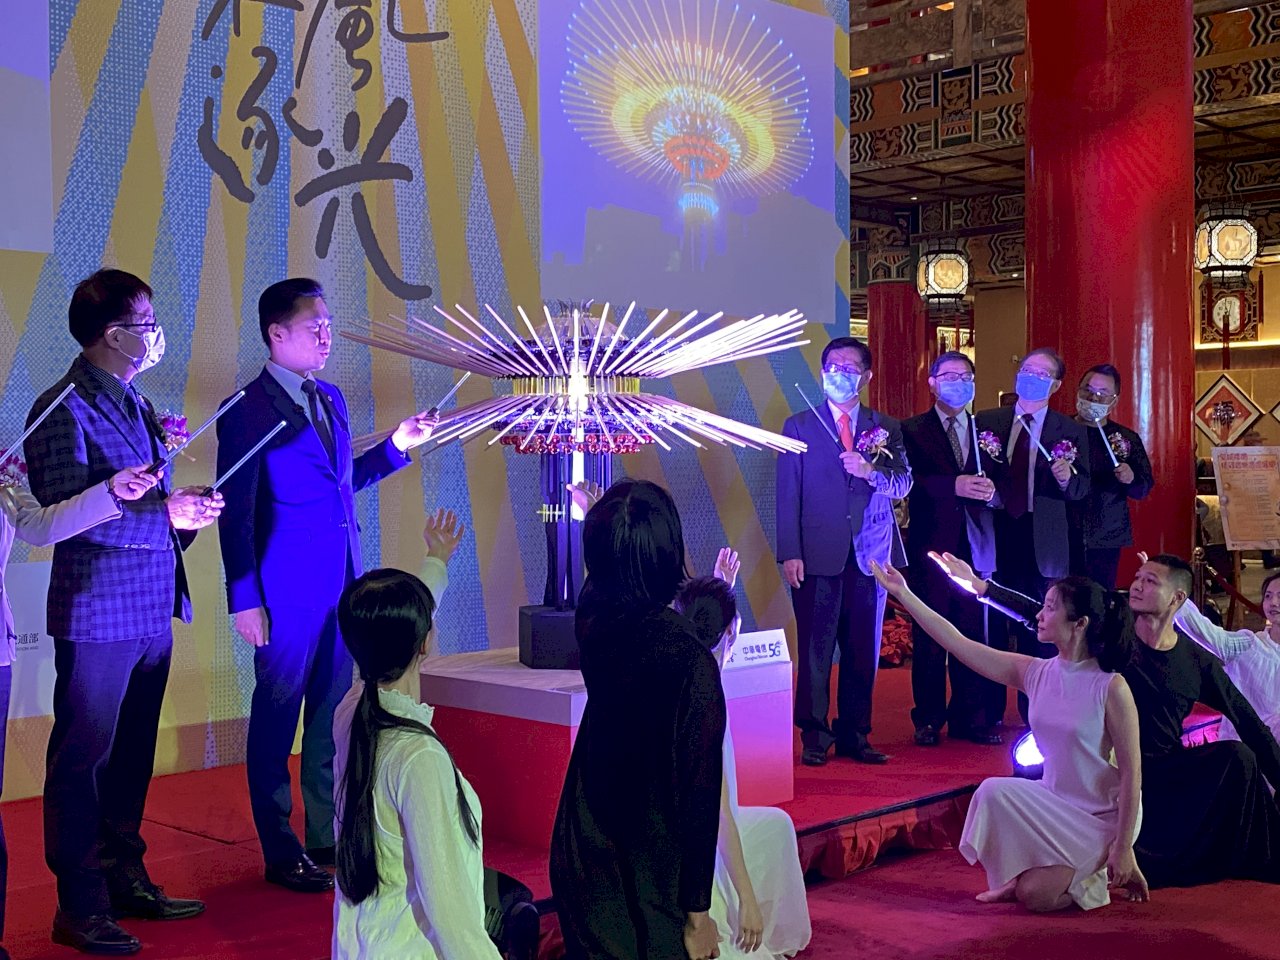 2021台灣燈會主燈「乘風逐光」 展現科技藝術新境界 (影音)